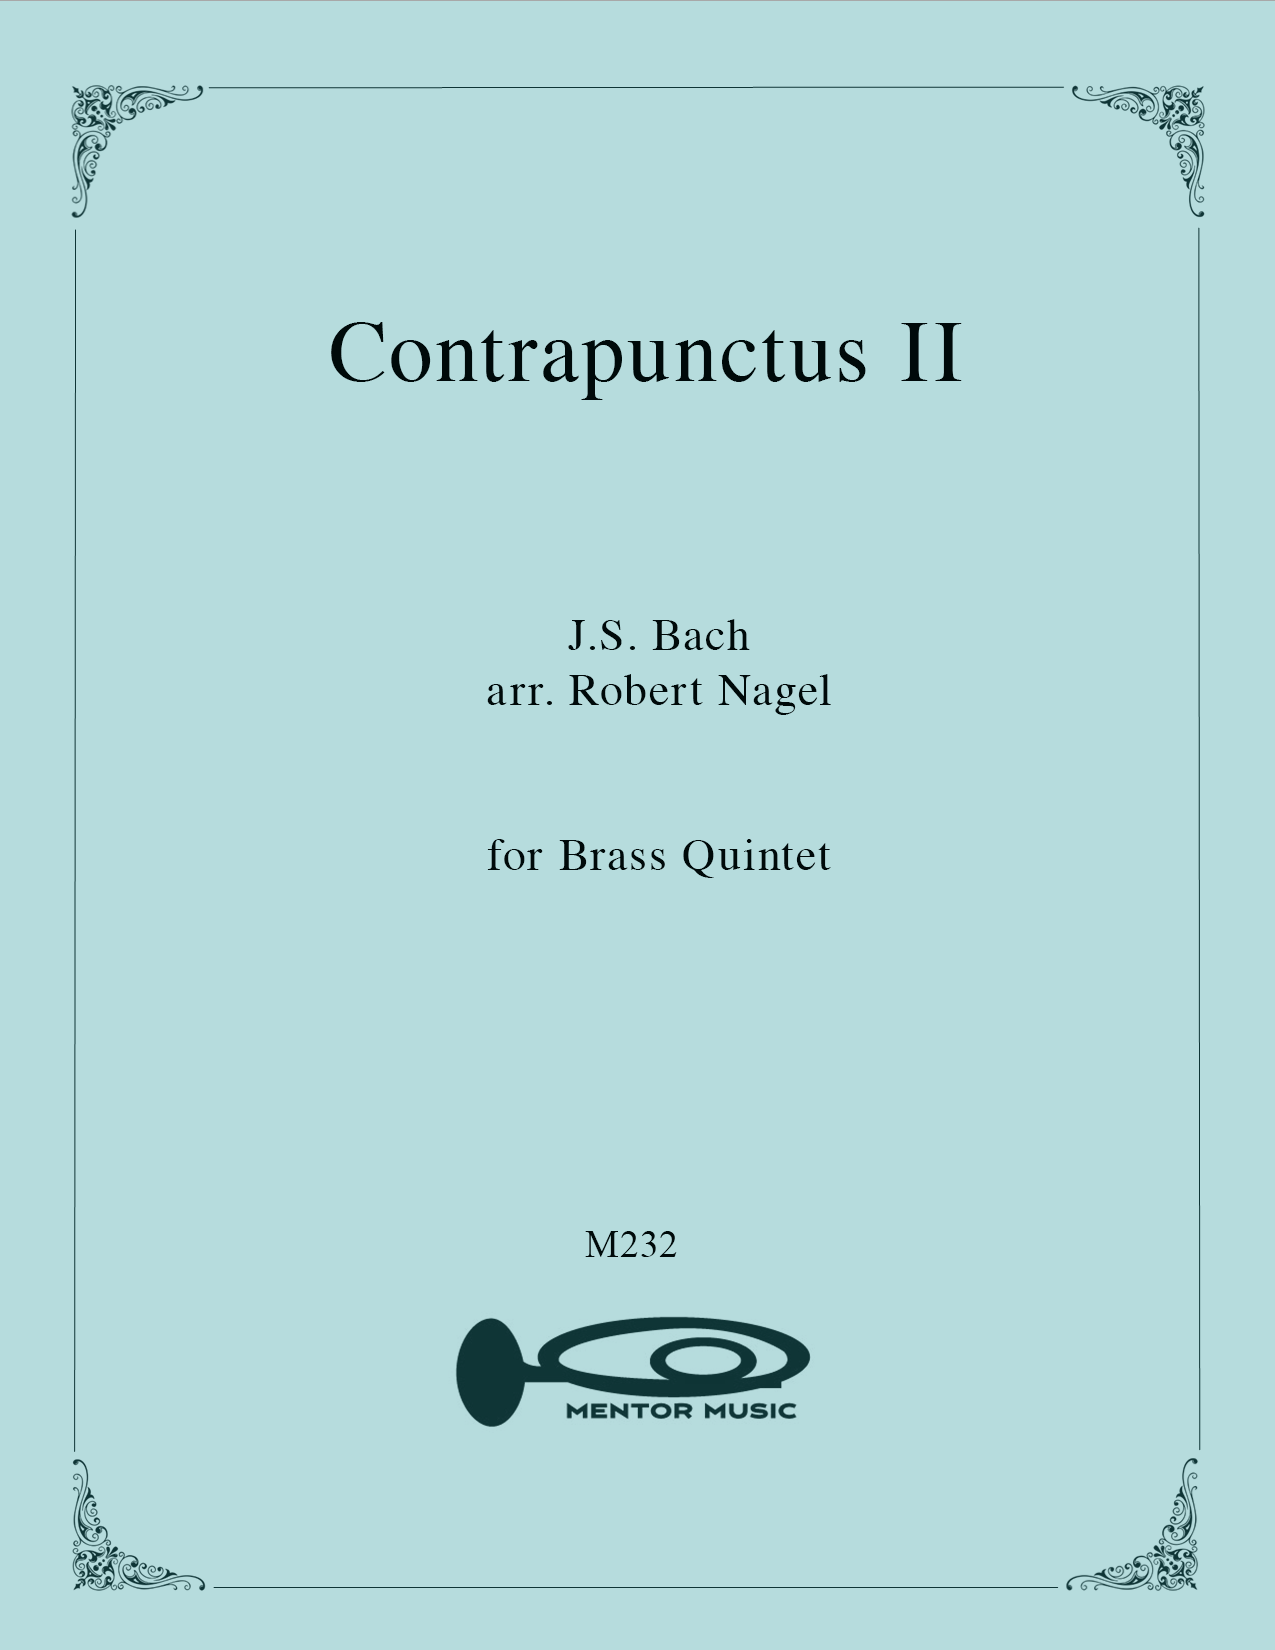 Contrapunctus II for Brass Quintet